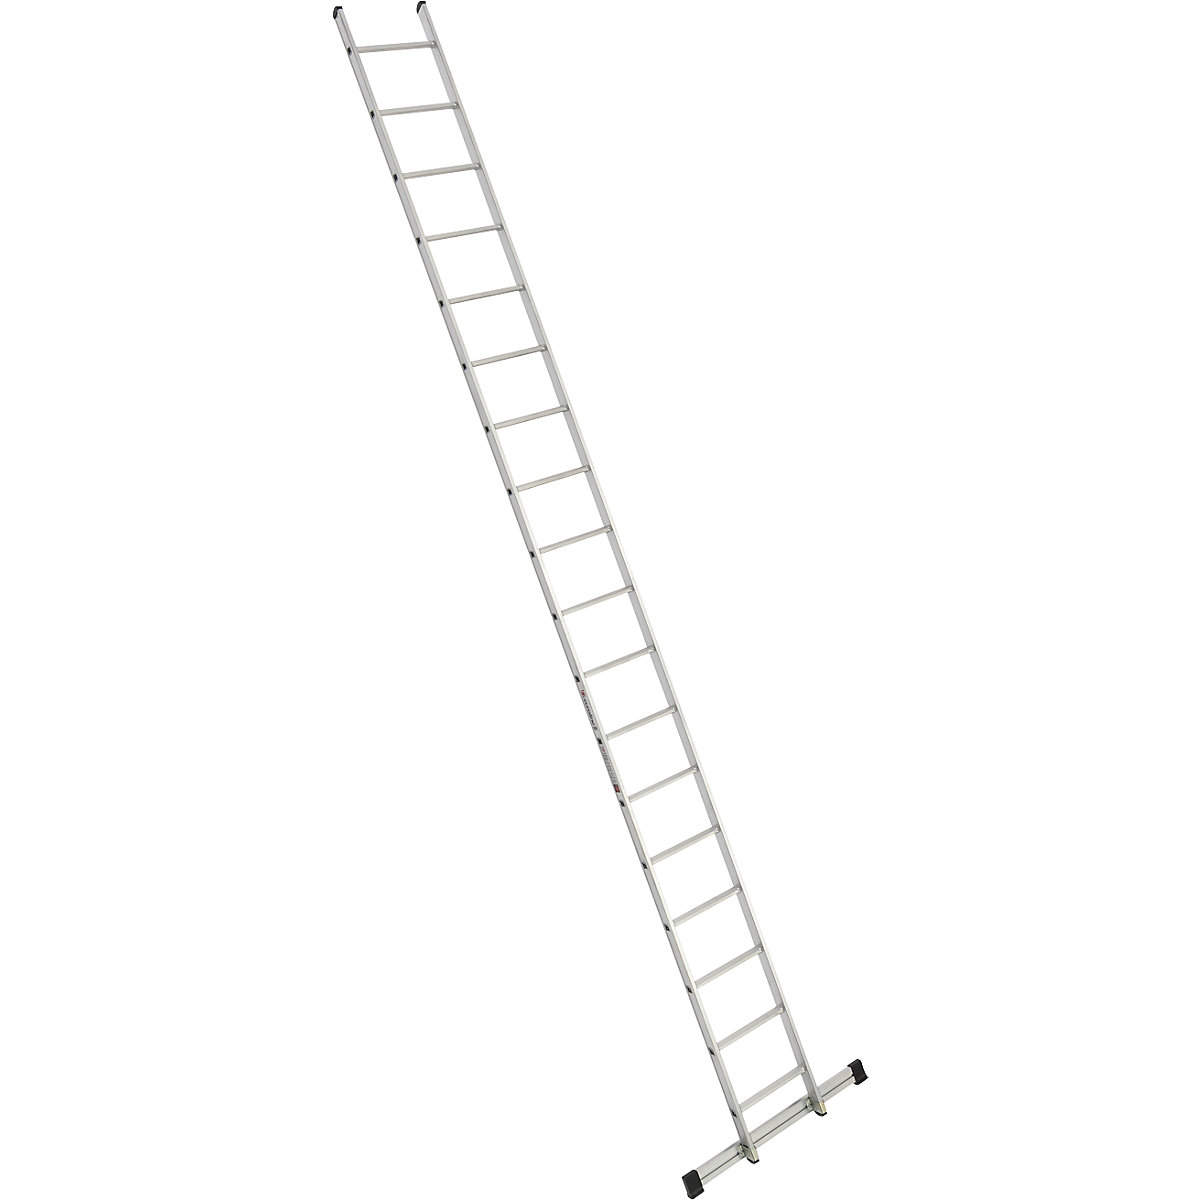 Príložný rebrík s priečkami – euroline, šírka 410 mm, 18 priečok s priečnikom-5